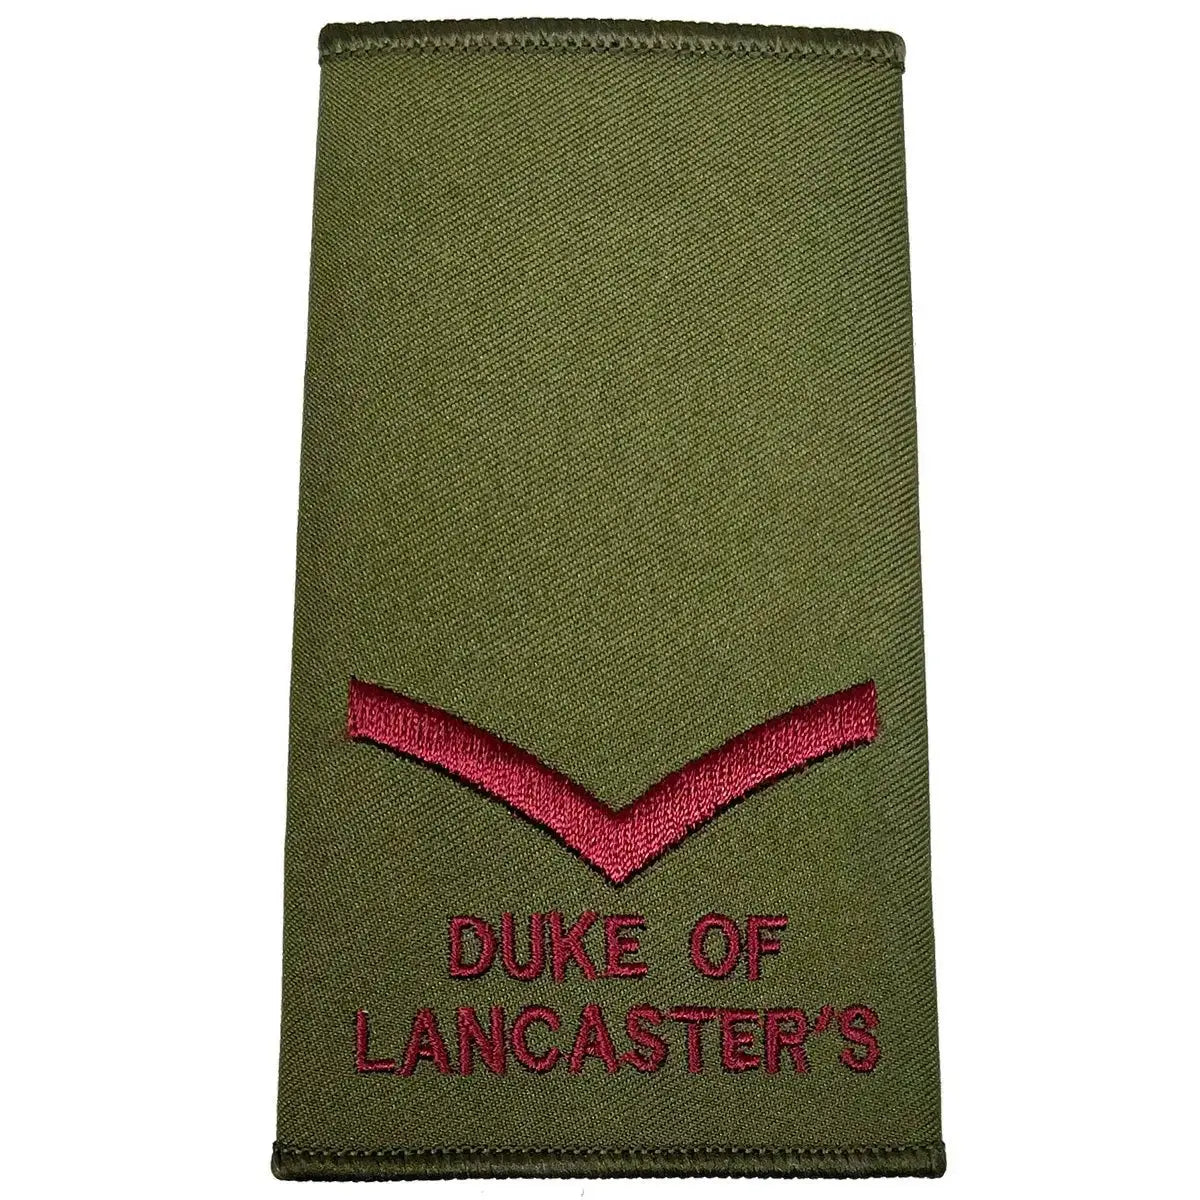 Duke of Lancaster's Olive Green Rank Slides (Pair) - John Bull Clothing